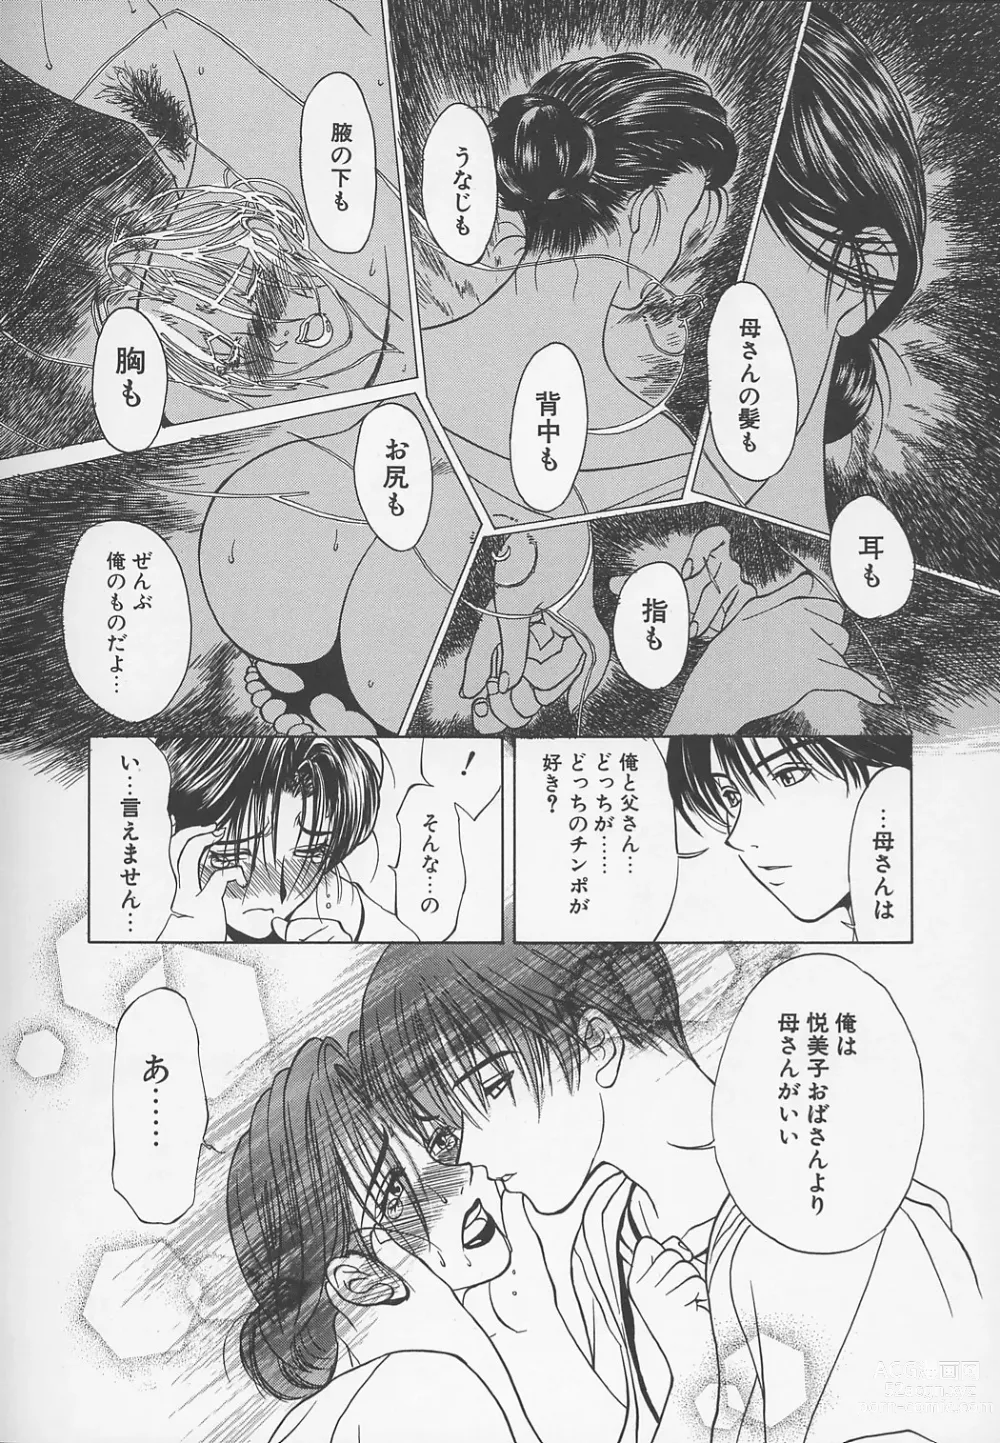 Page 235 of manga Enbo -Kanzenban-